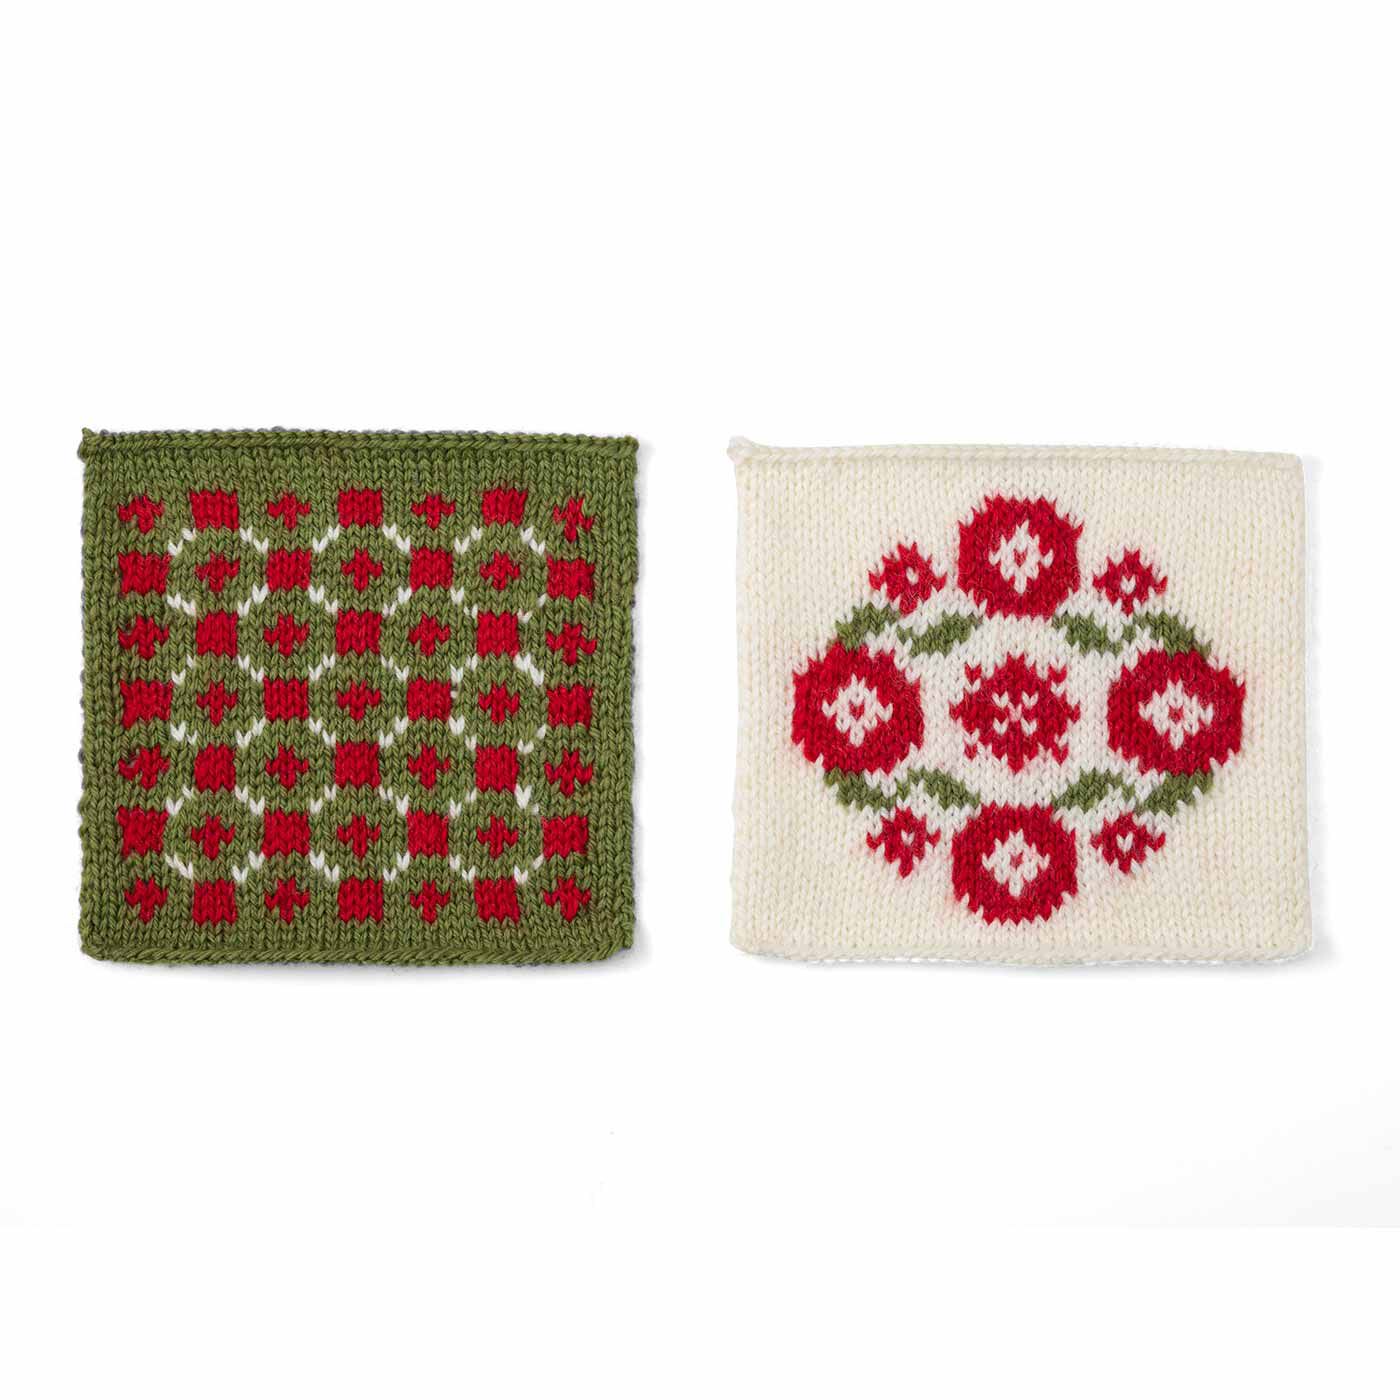 クチュリエ|自然からの贈りもの めくるめく北欧模様を楽しむ棒針編みサンプラーの会|ポピーのリース